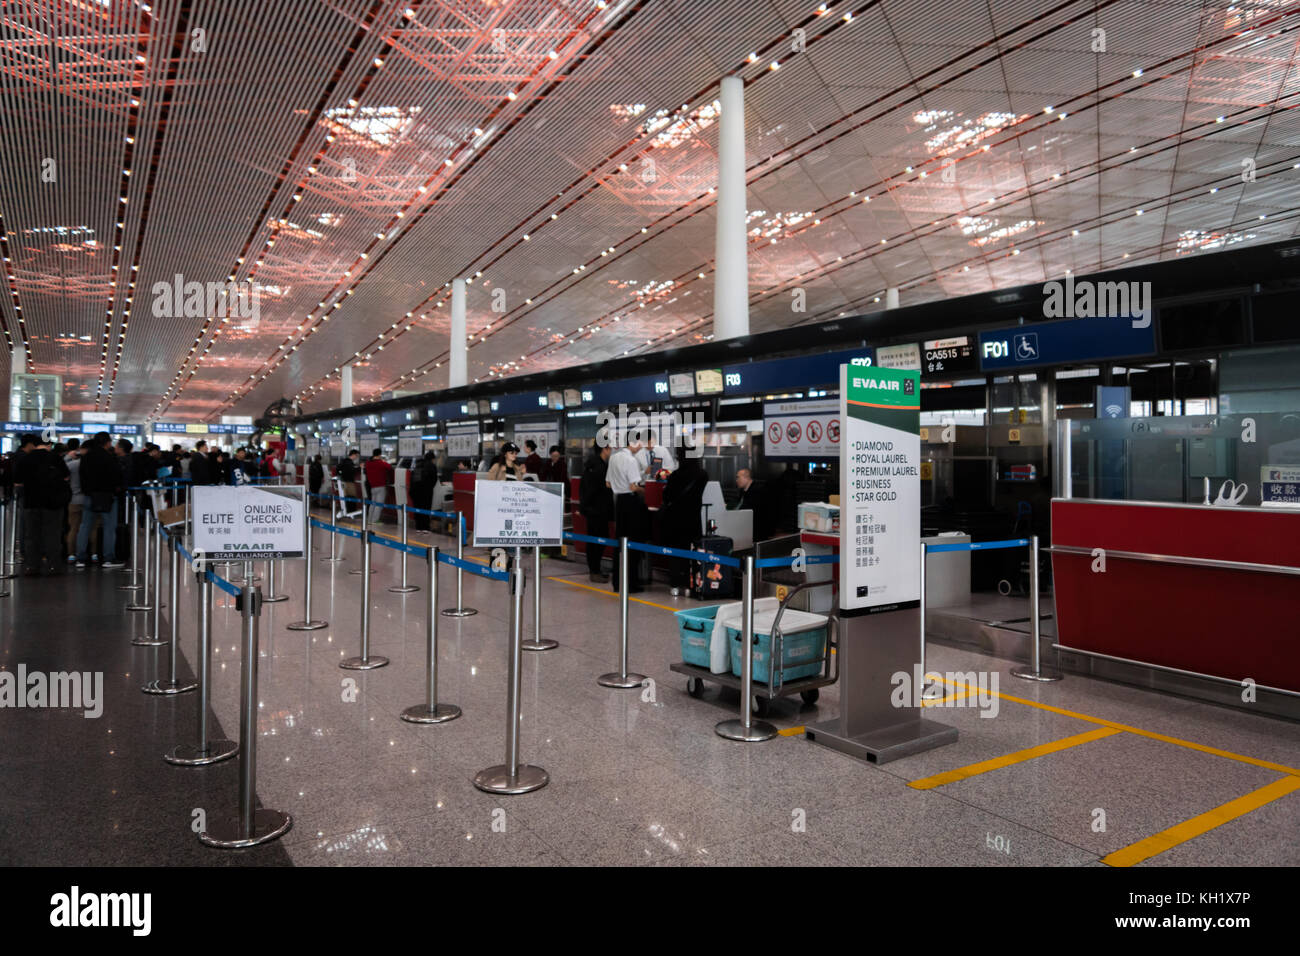 Pechino, Cina - ottobre 2017: eva air al banco check-in all'aeroporto di Pechino in Cina. eva air è un taiwanese compagnia aerea internazionale. Foto Stock